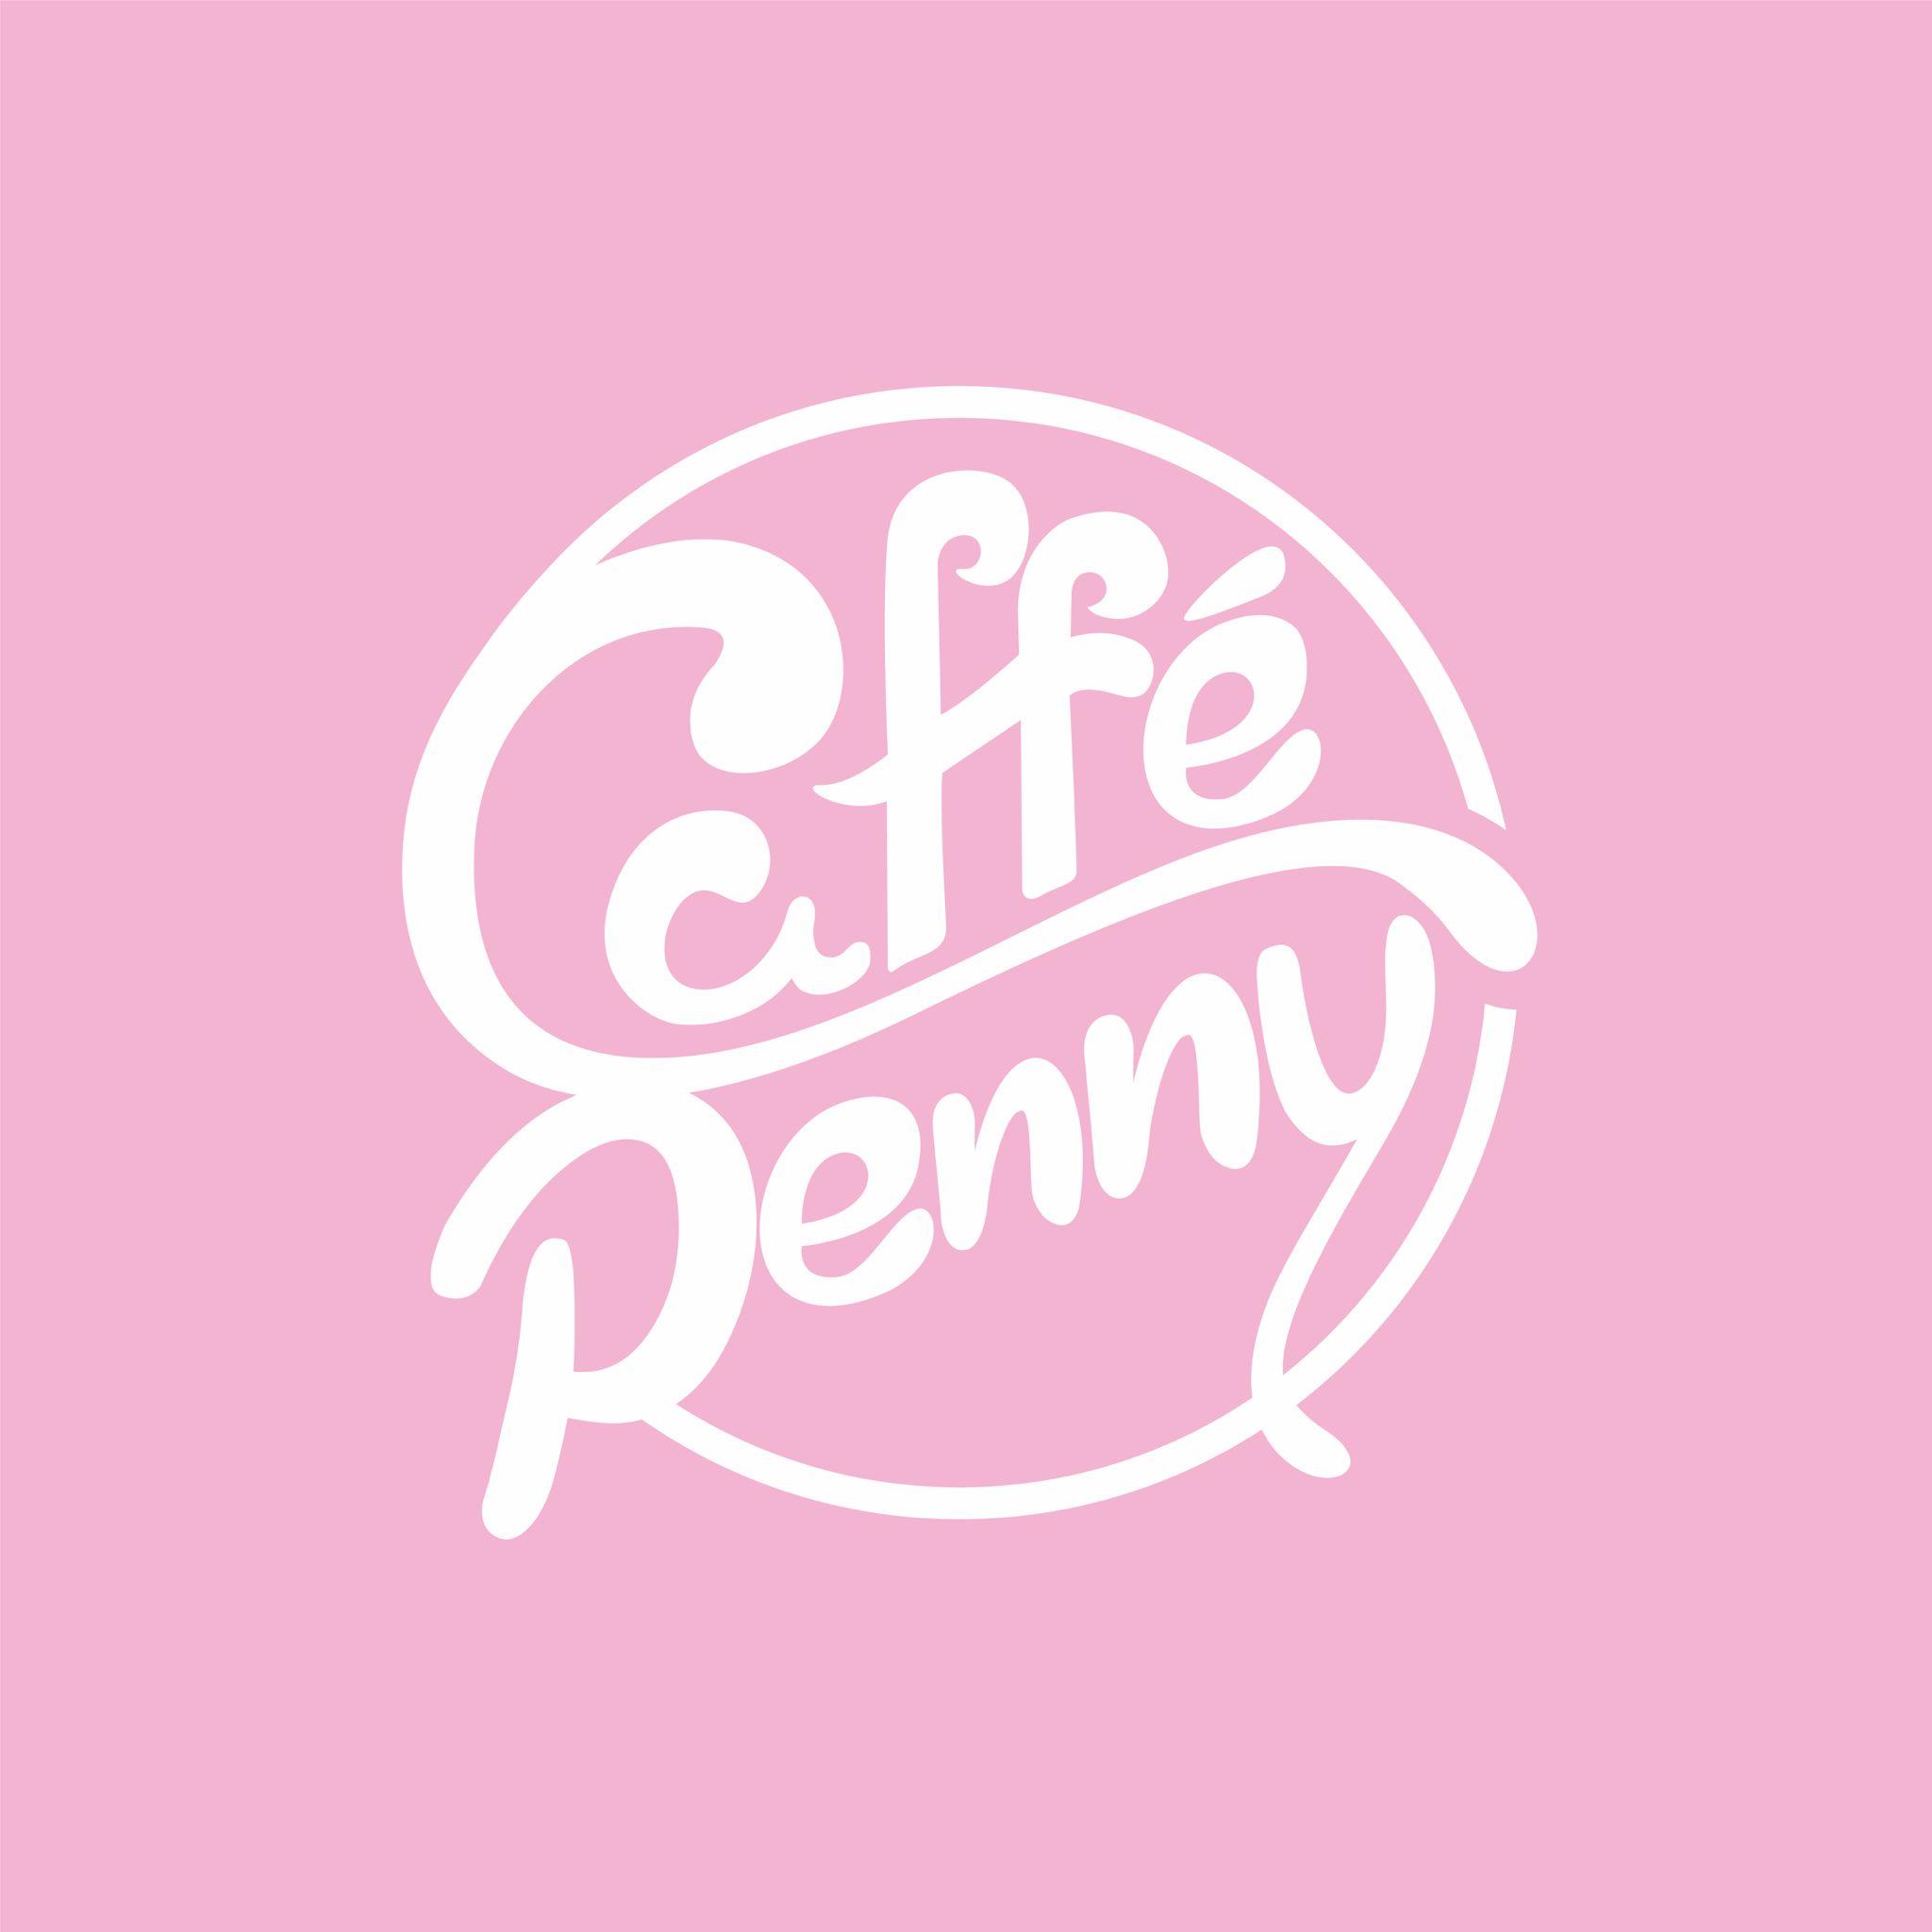 www.caffepenny.com